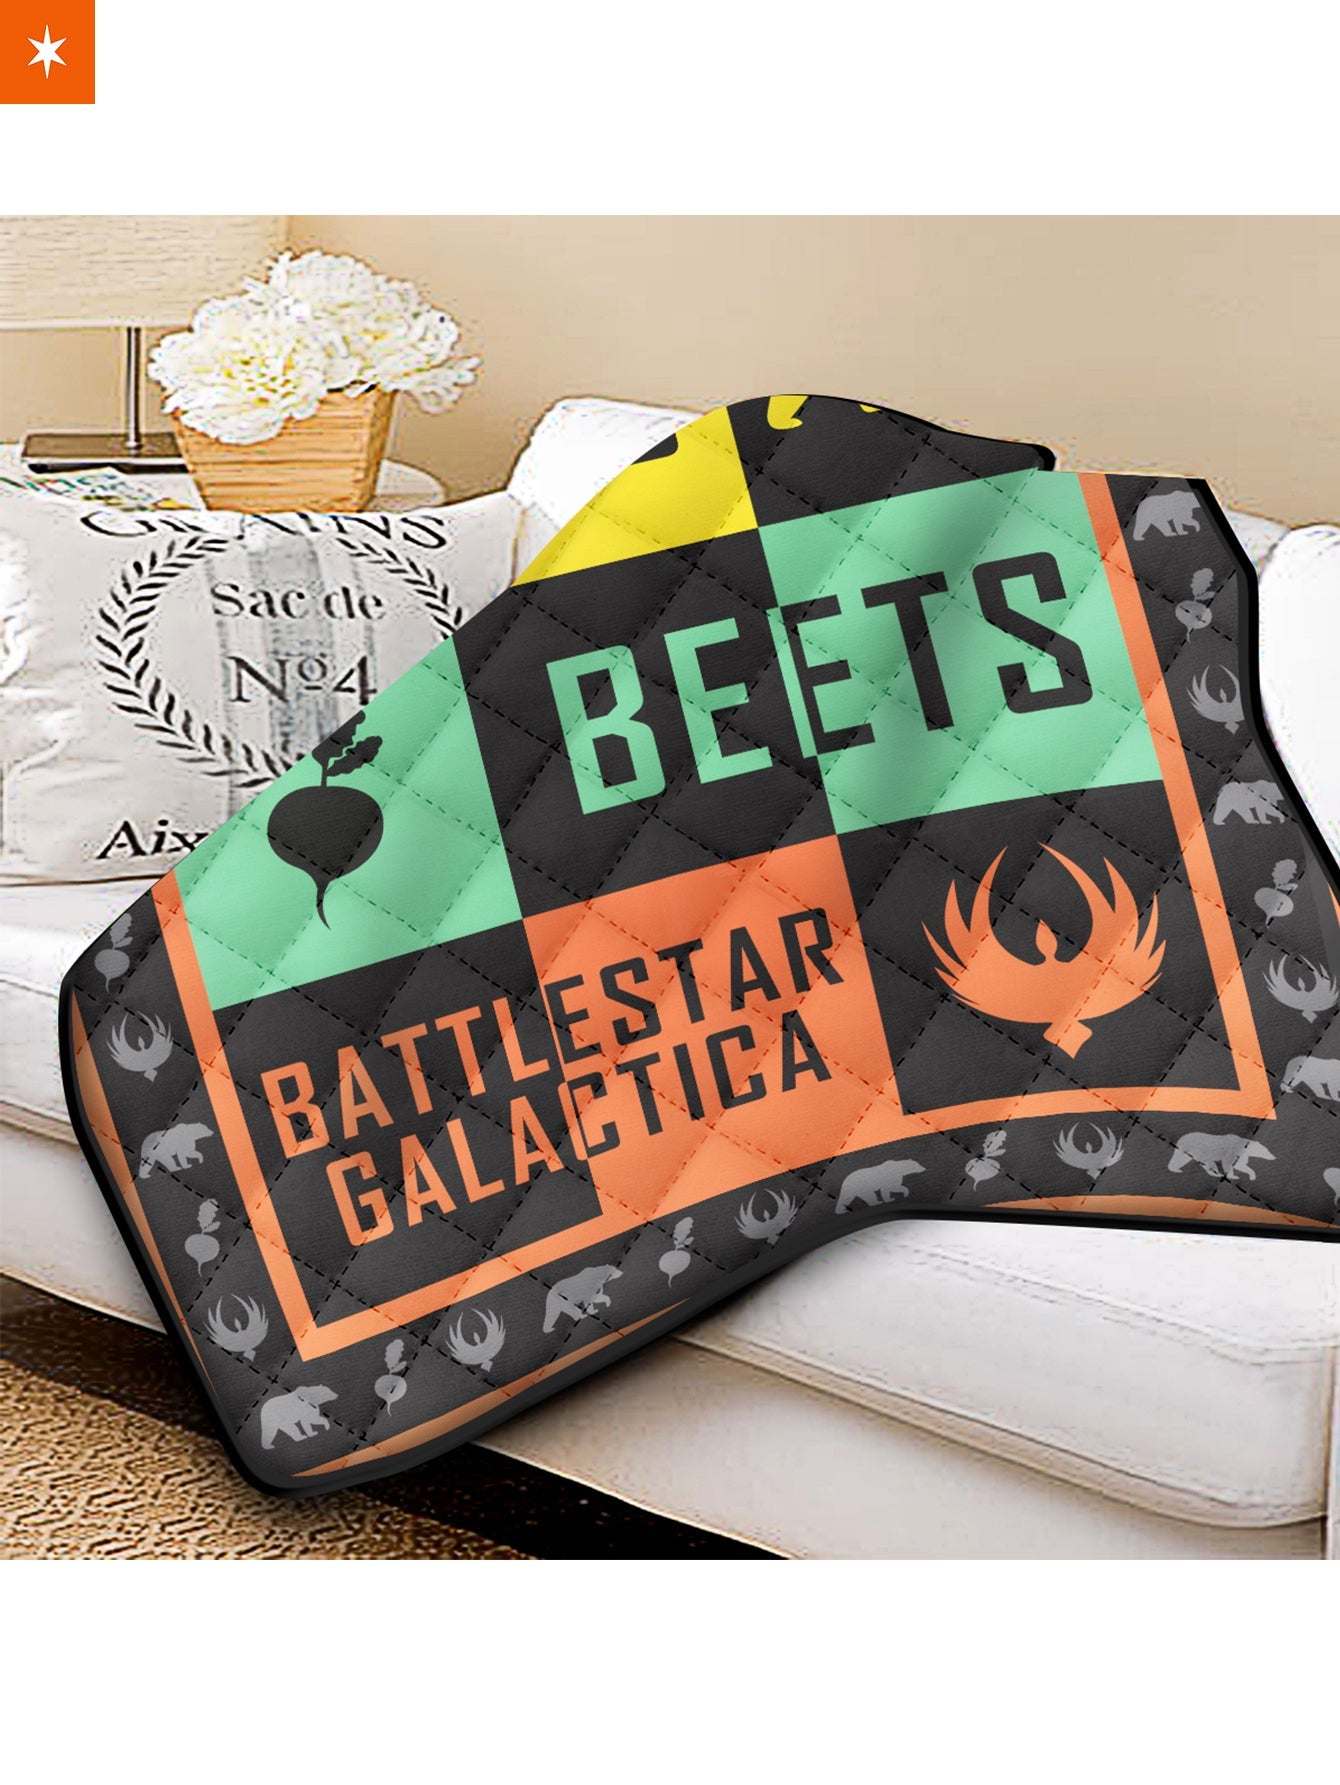 Fandomaniax - Bears Beets Battlestar Galactica Quilt Blanket